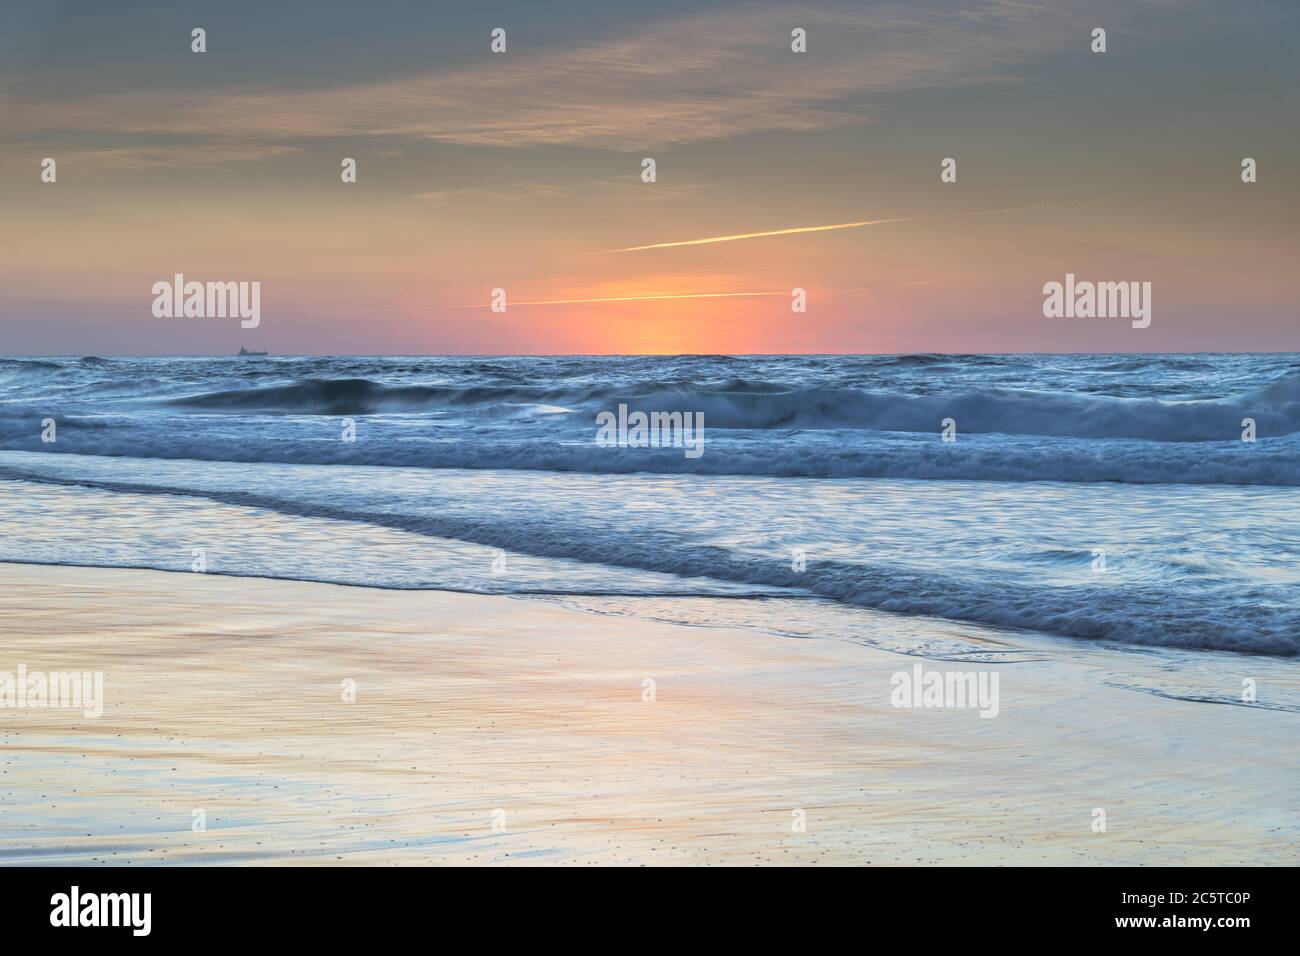 Sunrise Seascape at the Beach depuis Redhead Beach sur la côte centrale de Nouvelle-Galles du Sud, Australie Banque D'Images